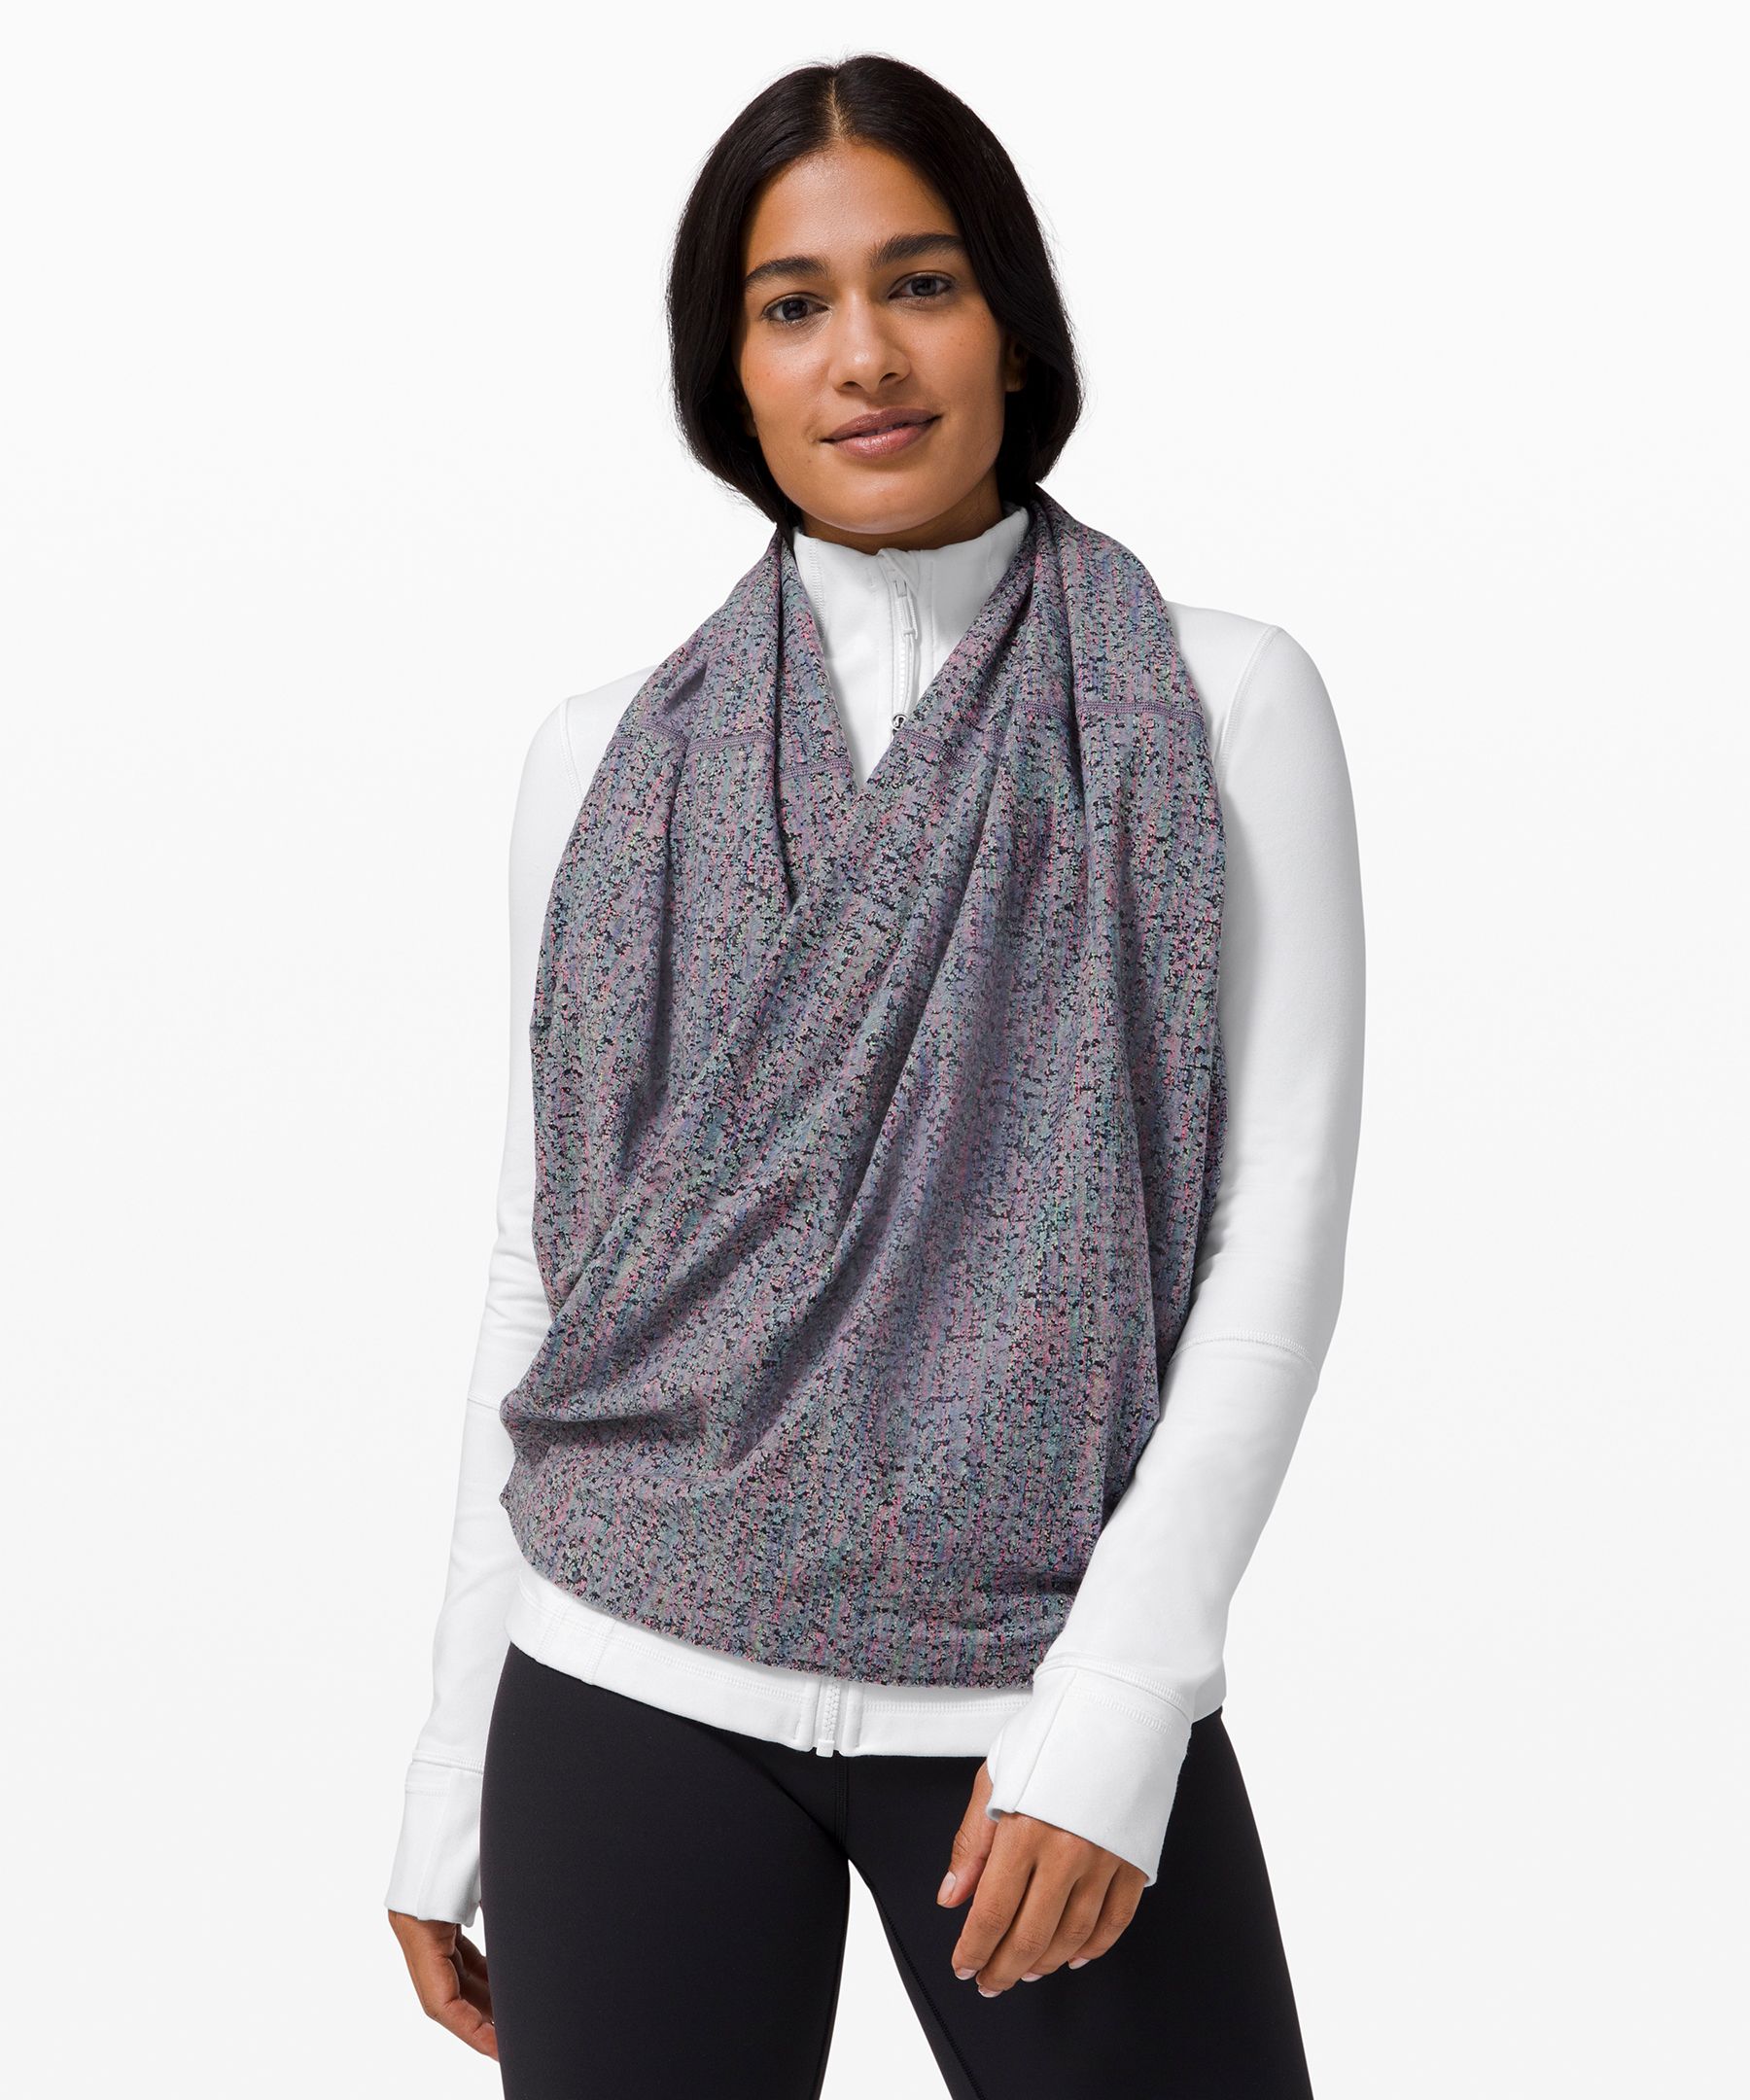 vinyasa scarf review